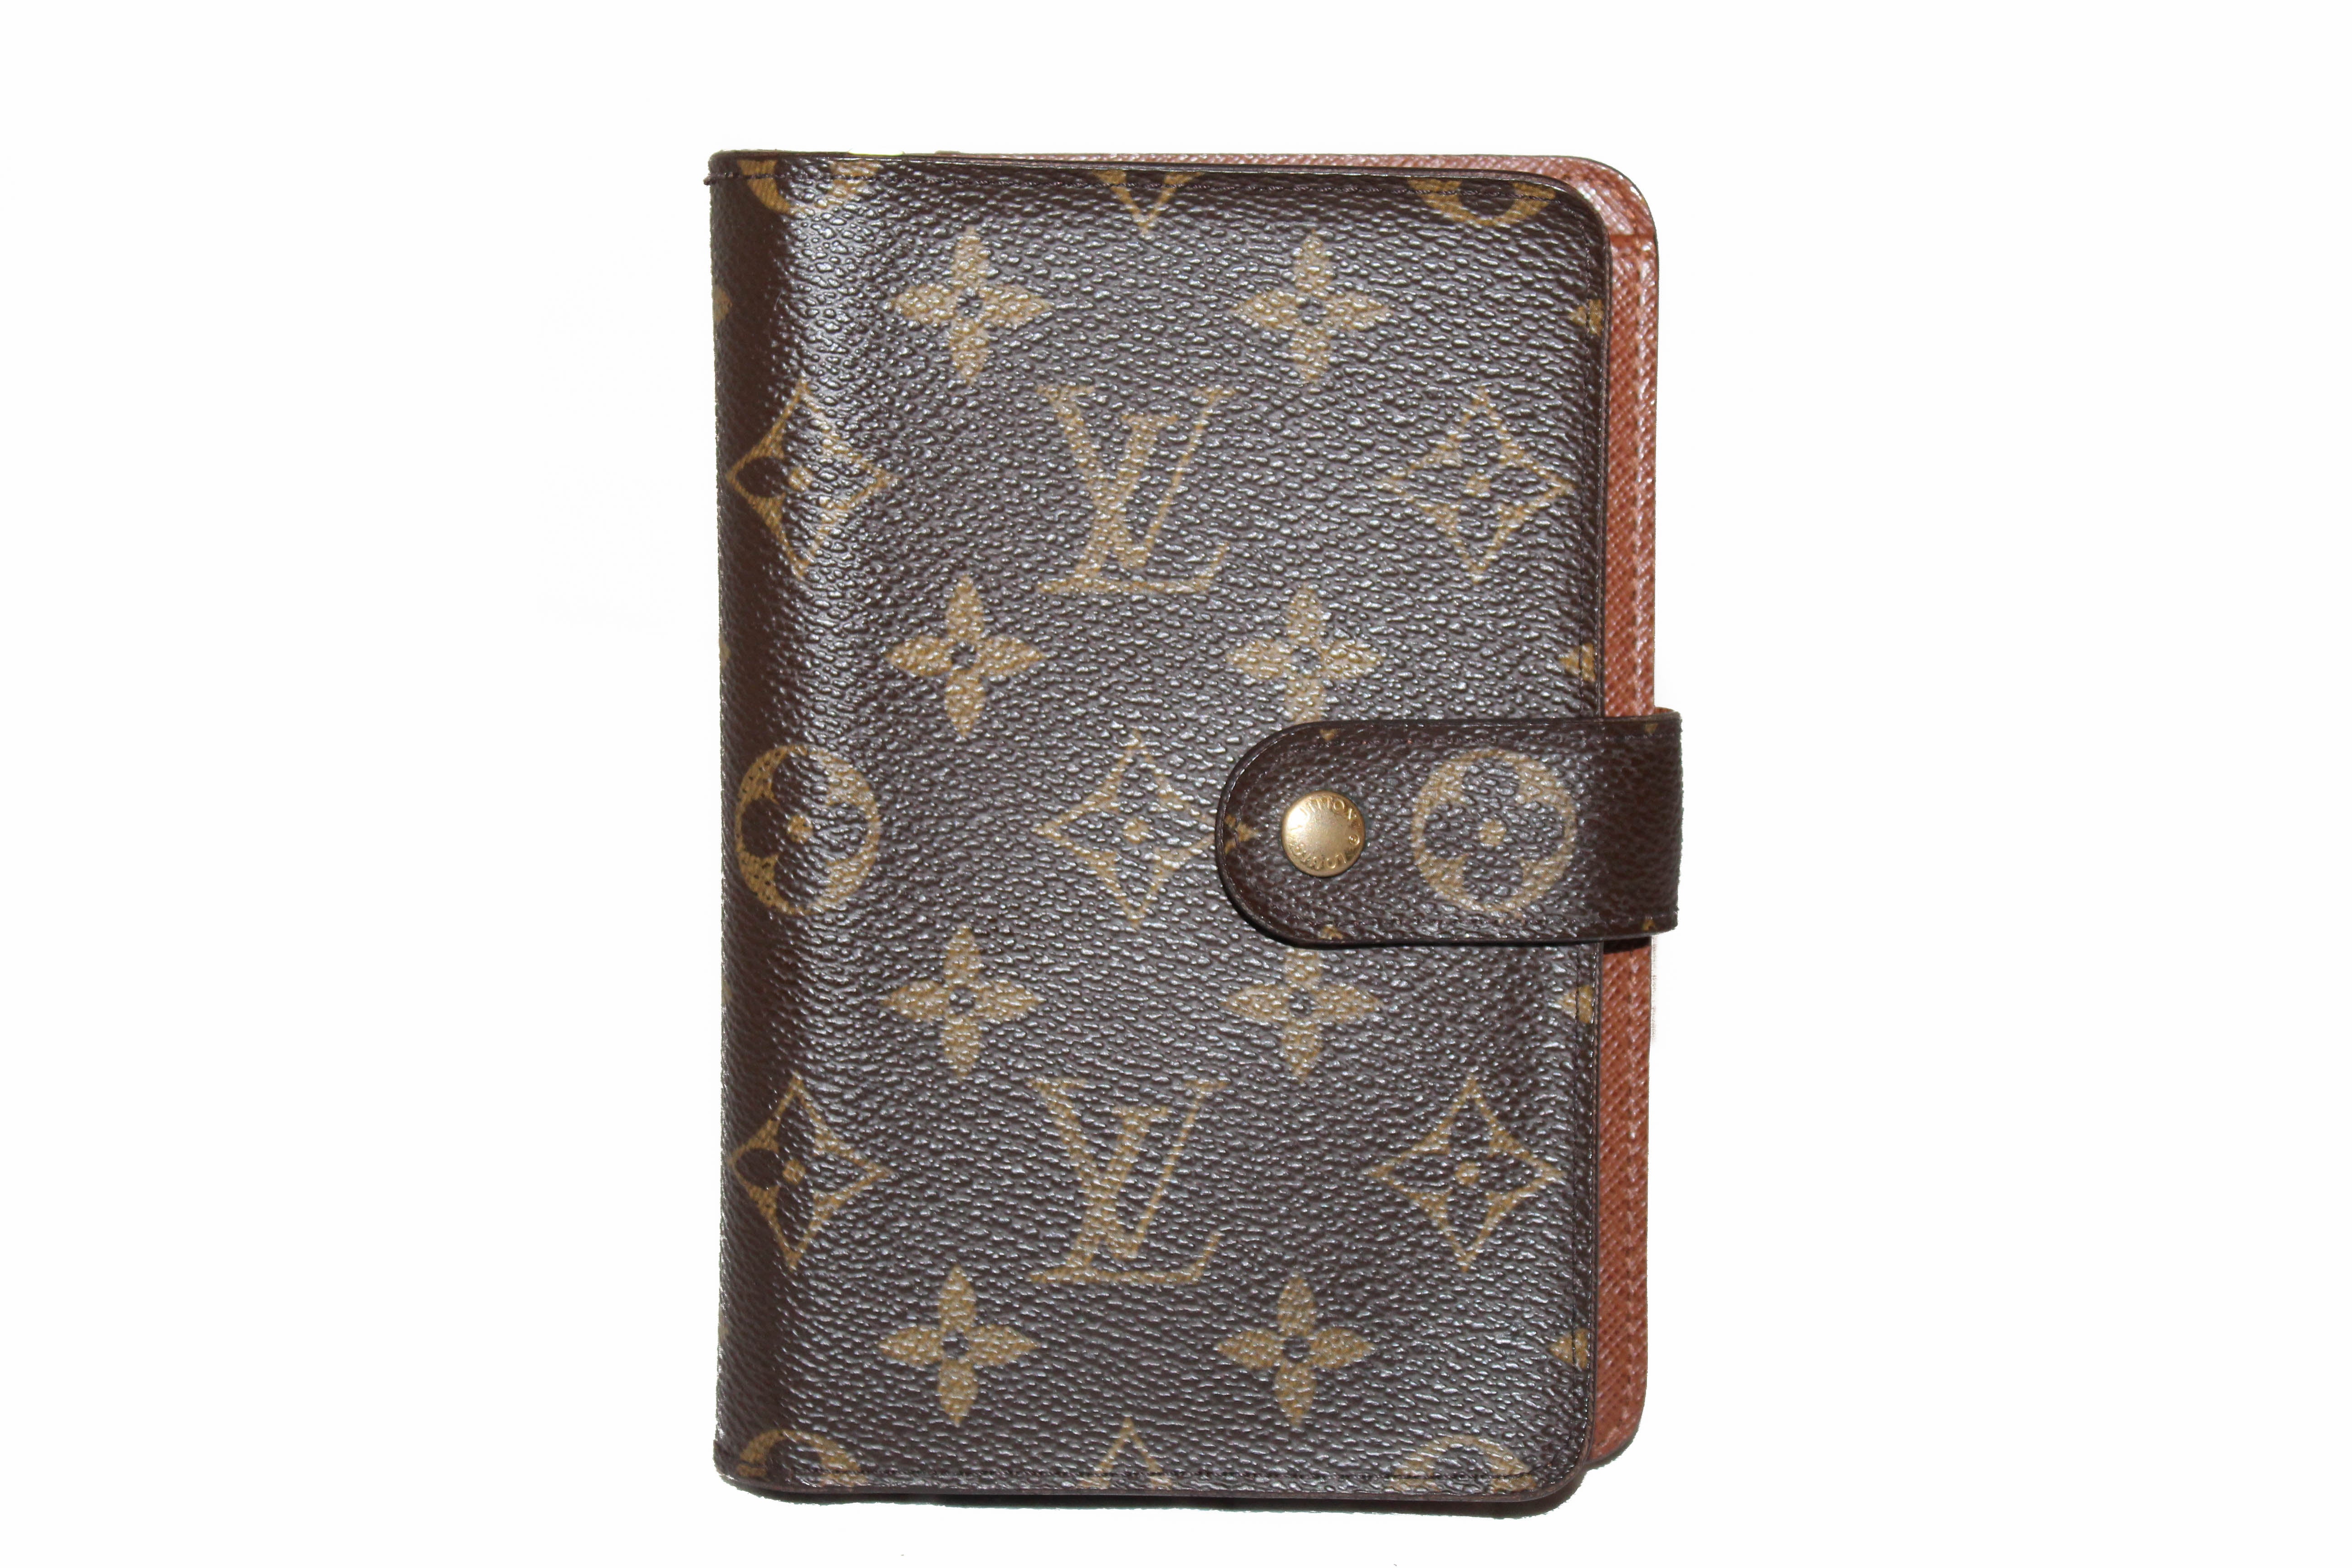 Louis Vuitton Clémence Monogram Wallet